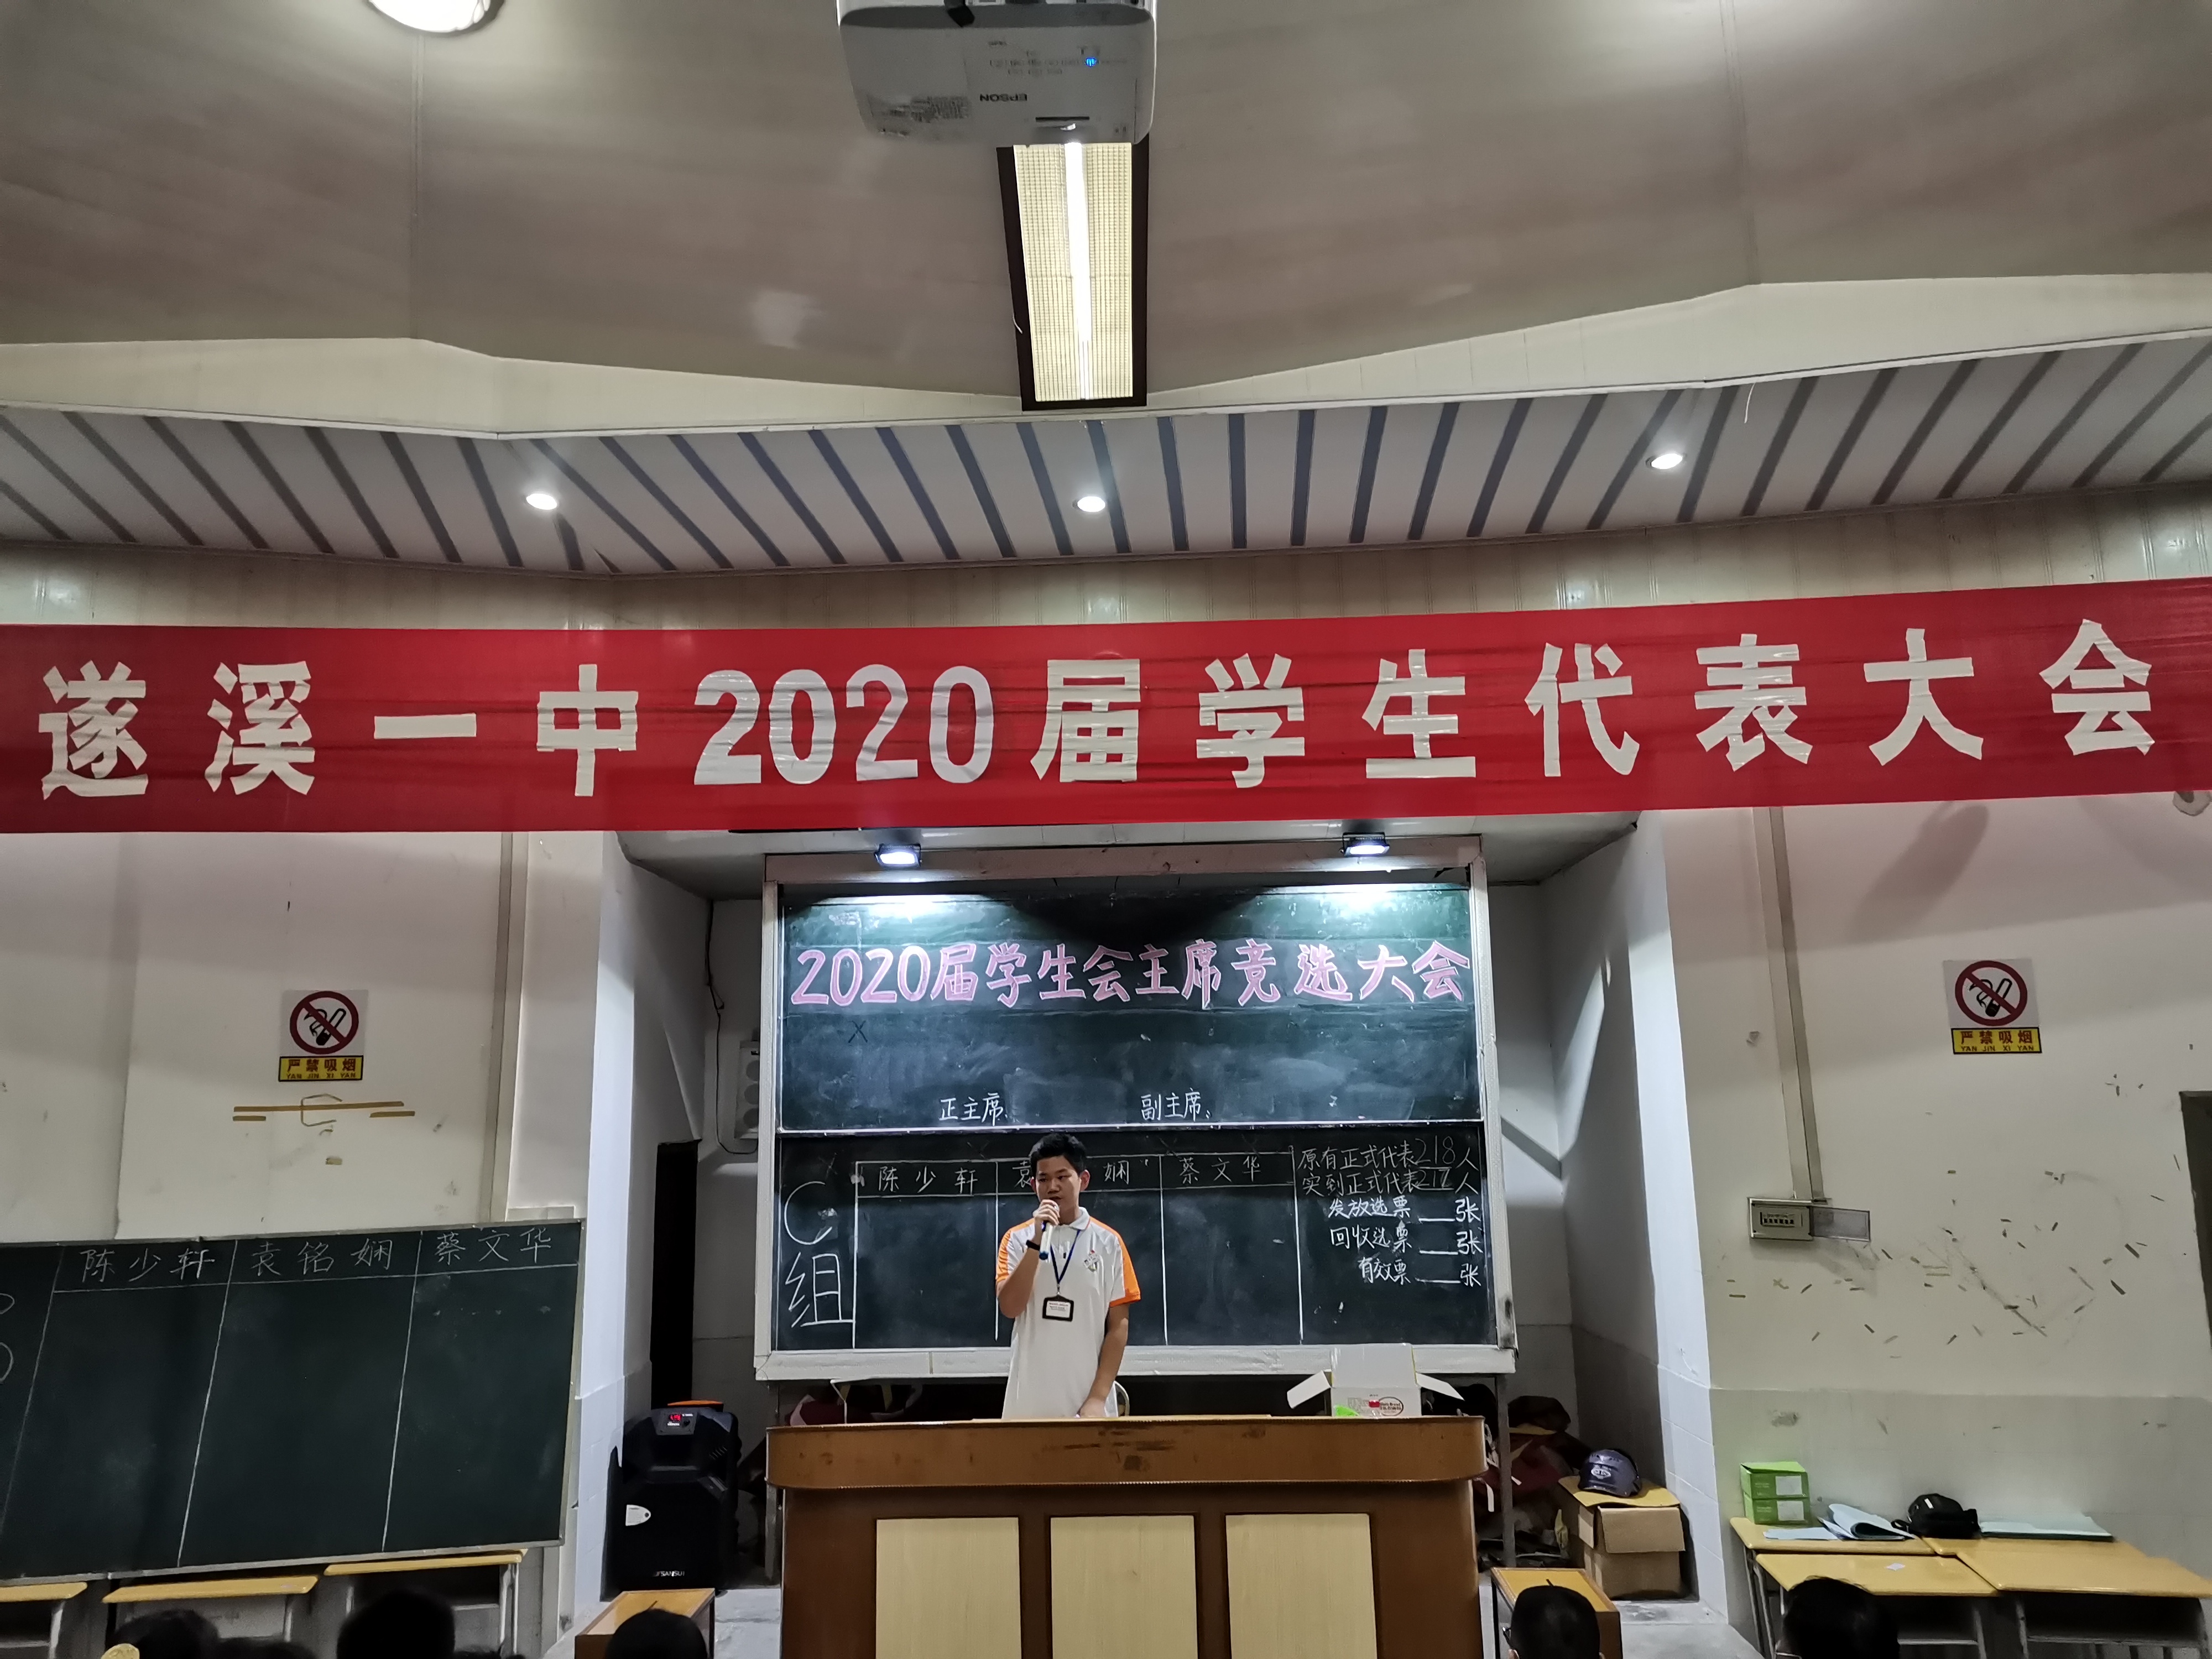 遂溪一中举行2020届学生代表大会暨学生会主席换届大会